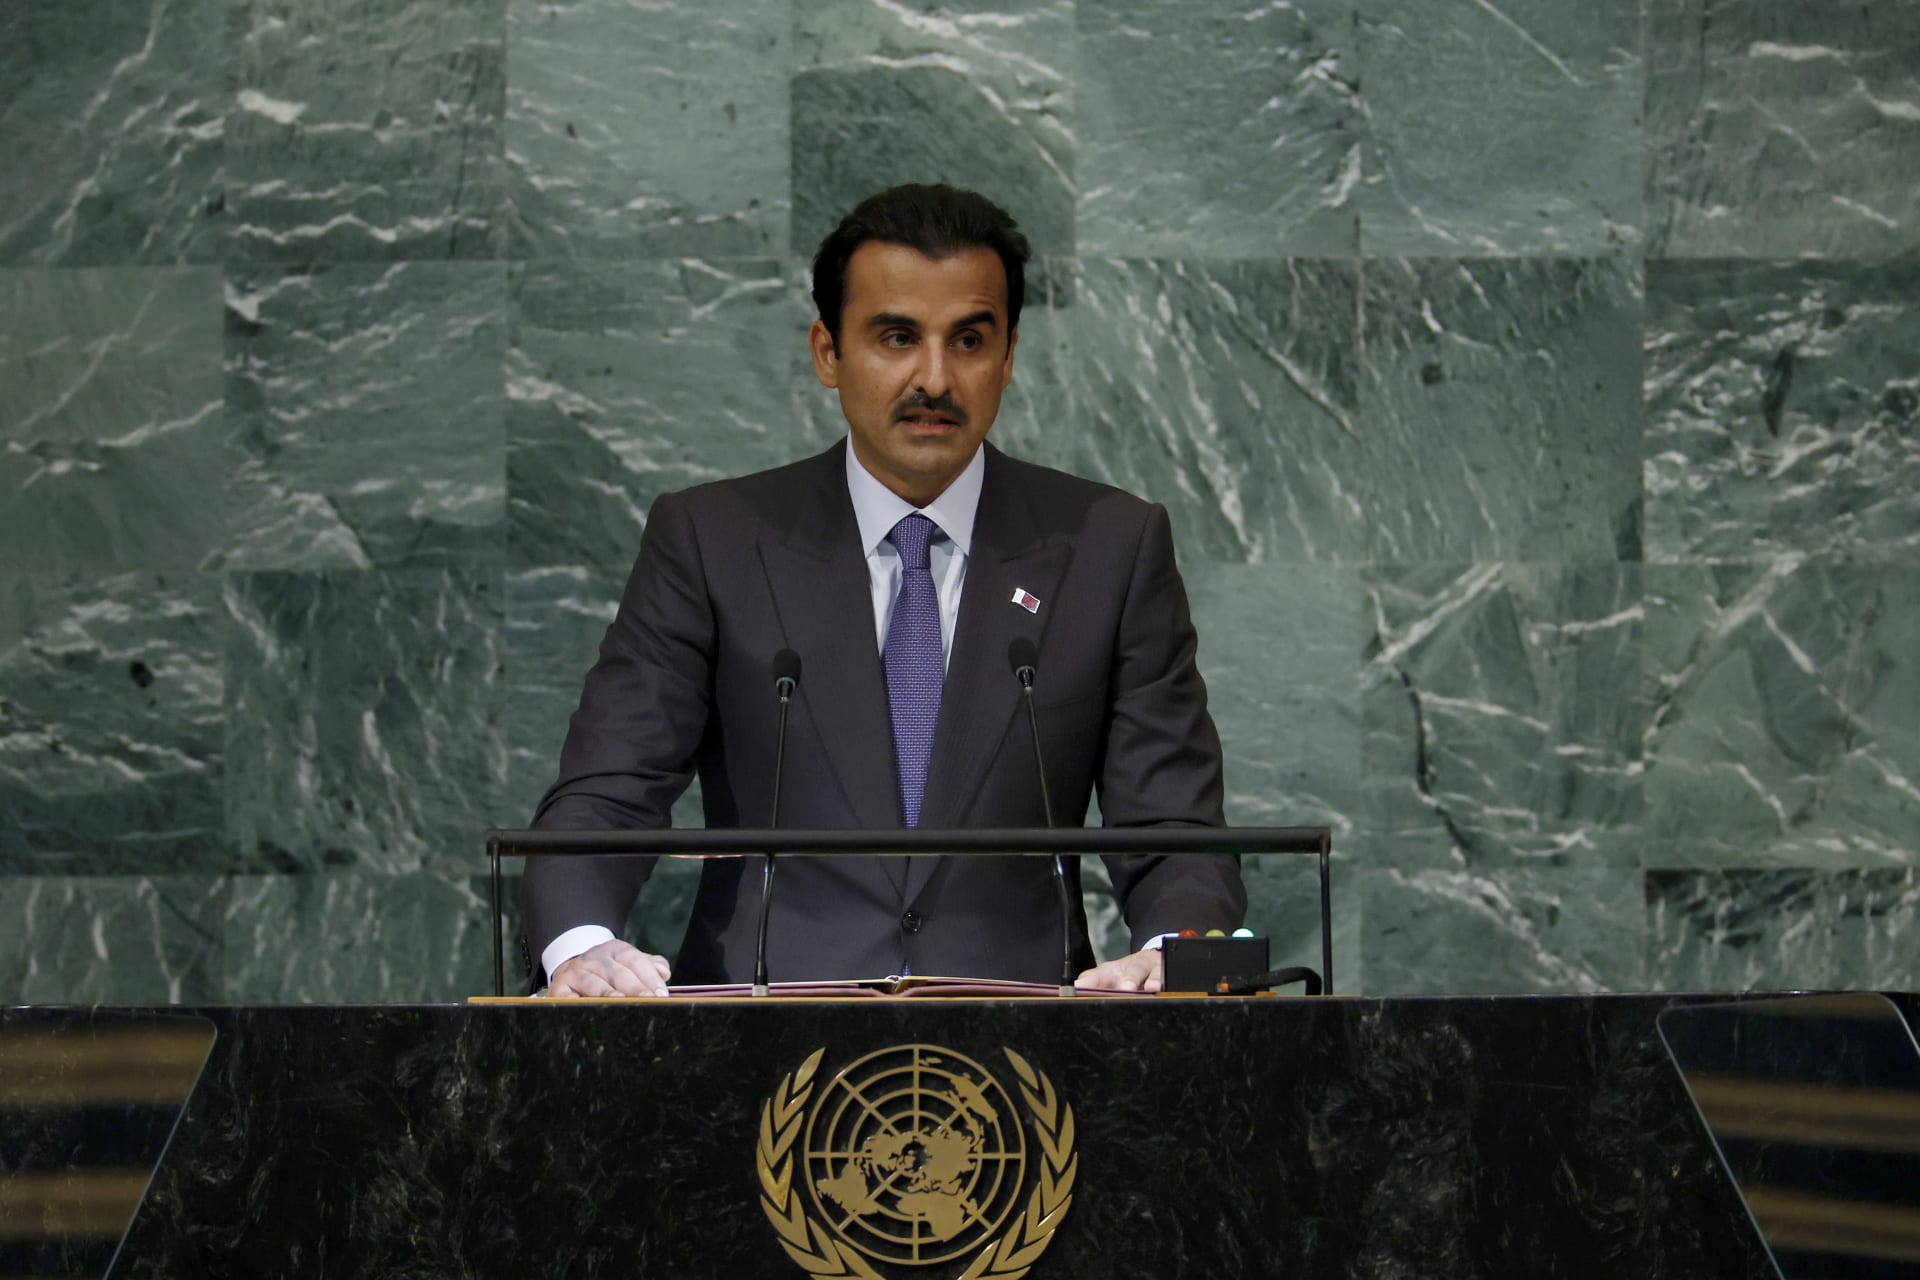  تميم بن حمد آل ثاني، أمير قطر